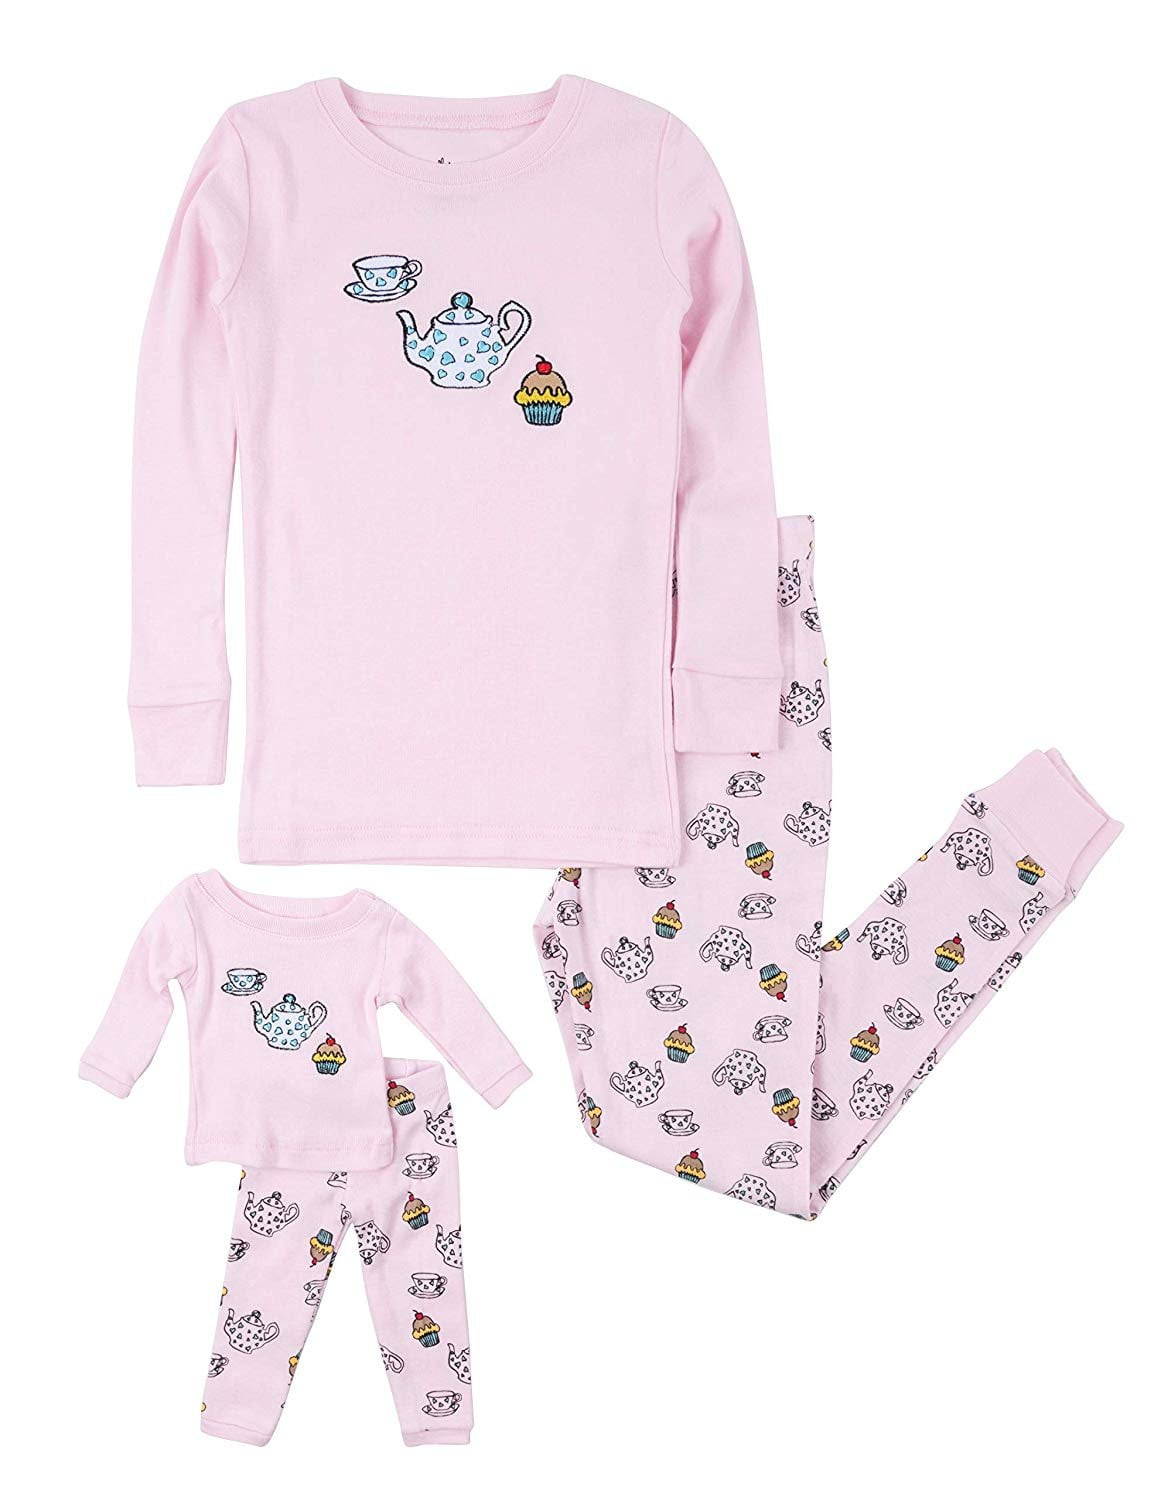 Leveret - Leveret Kids Pajamas Matching Doll & Girls Pajamas 100% ...